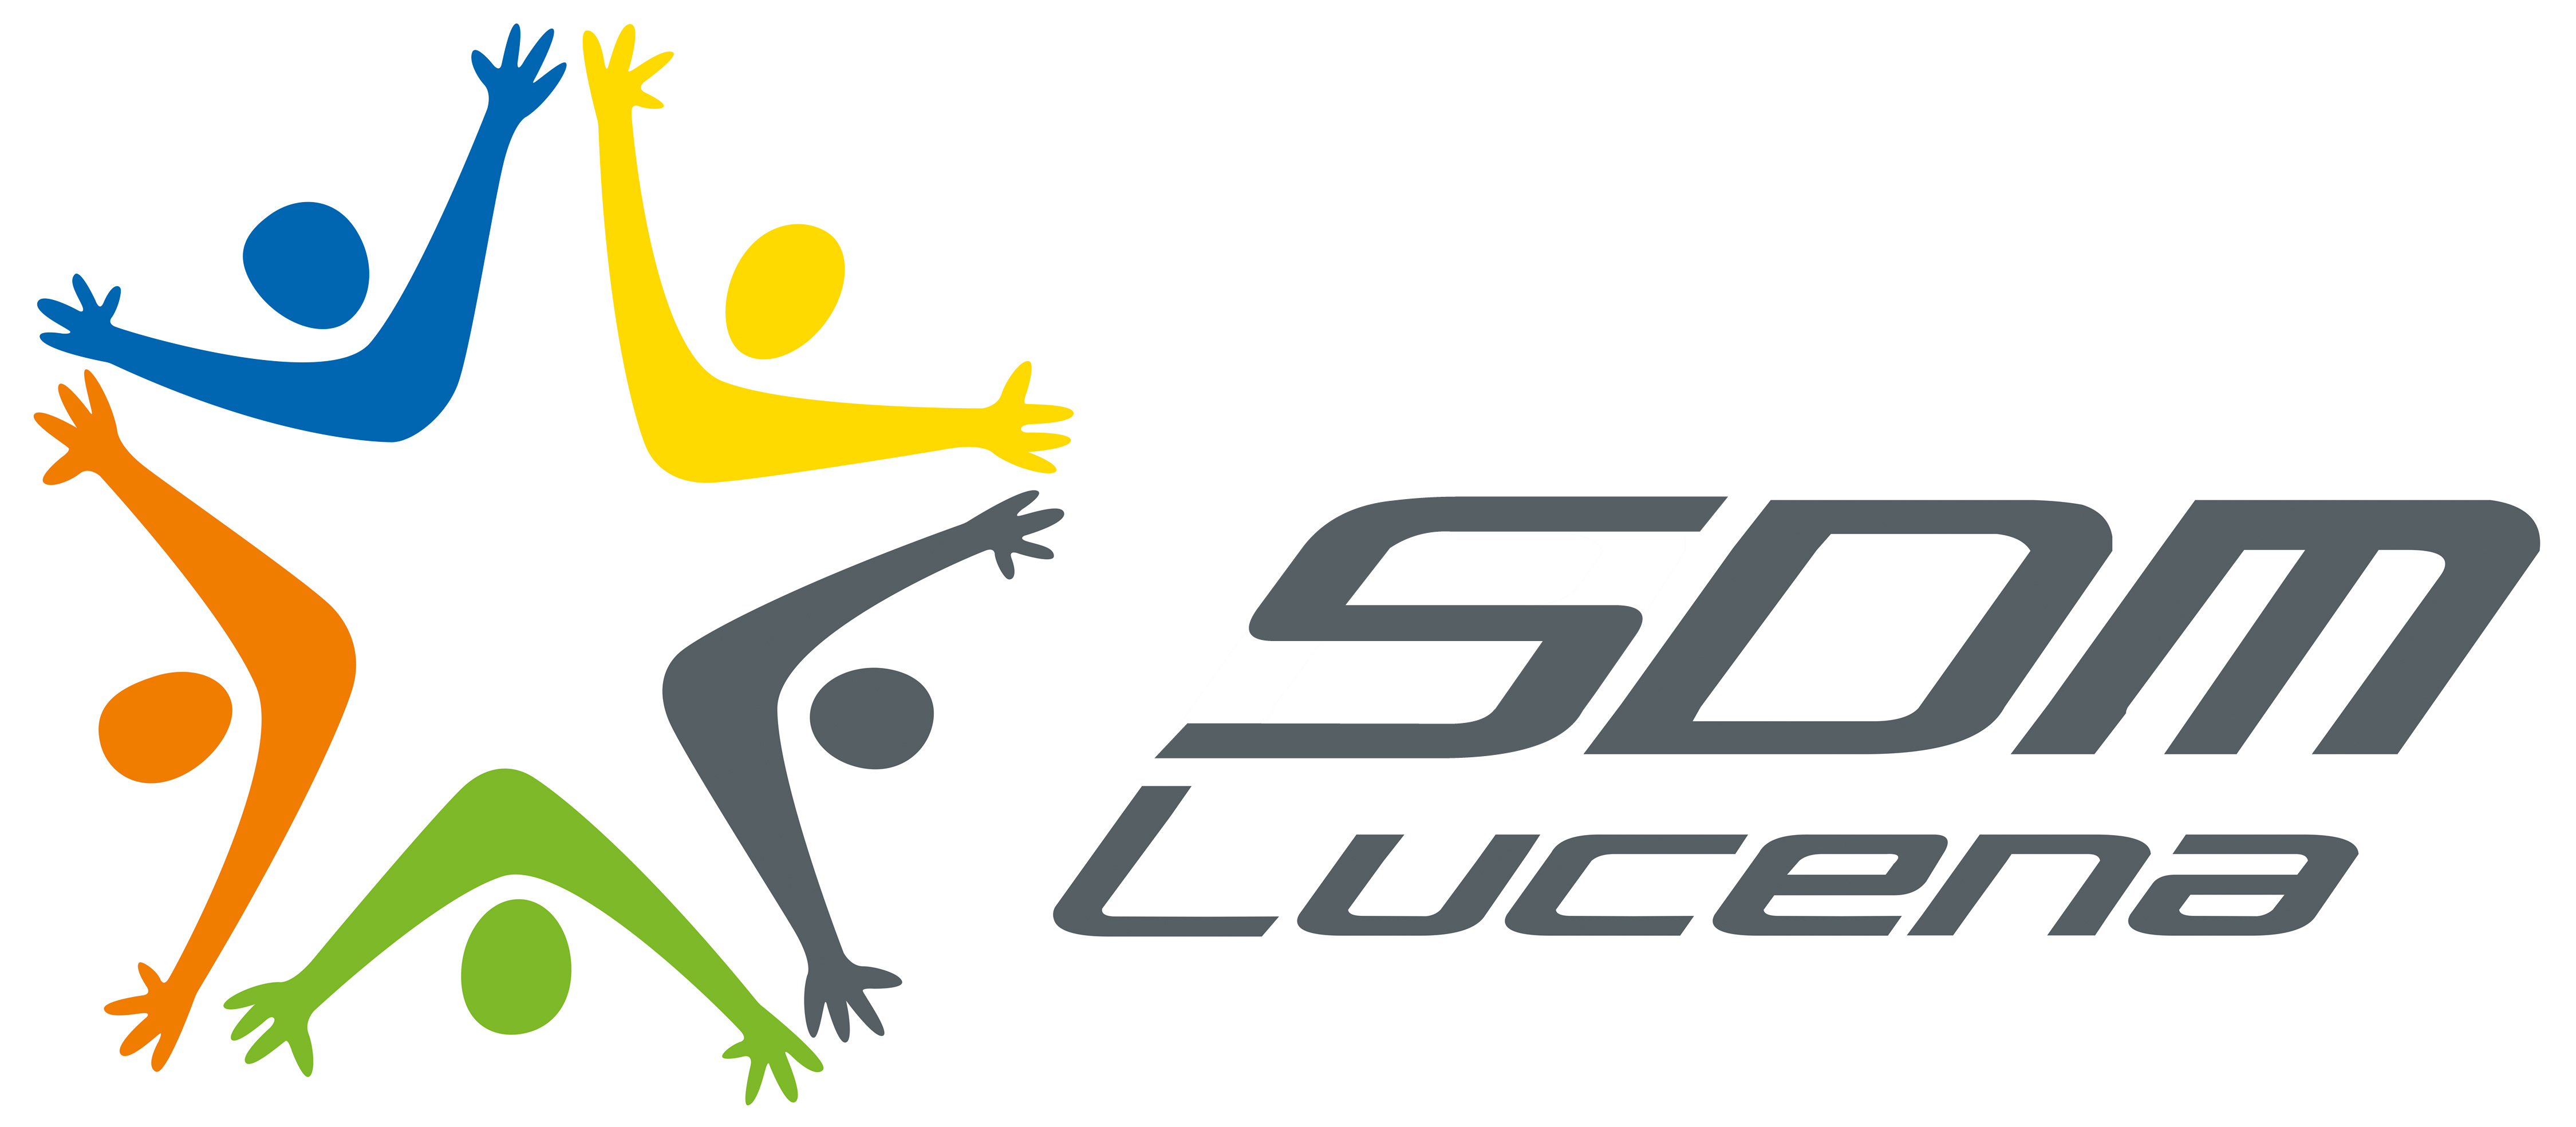 Bienvenido al SDM Lucena